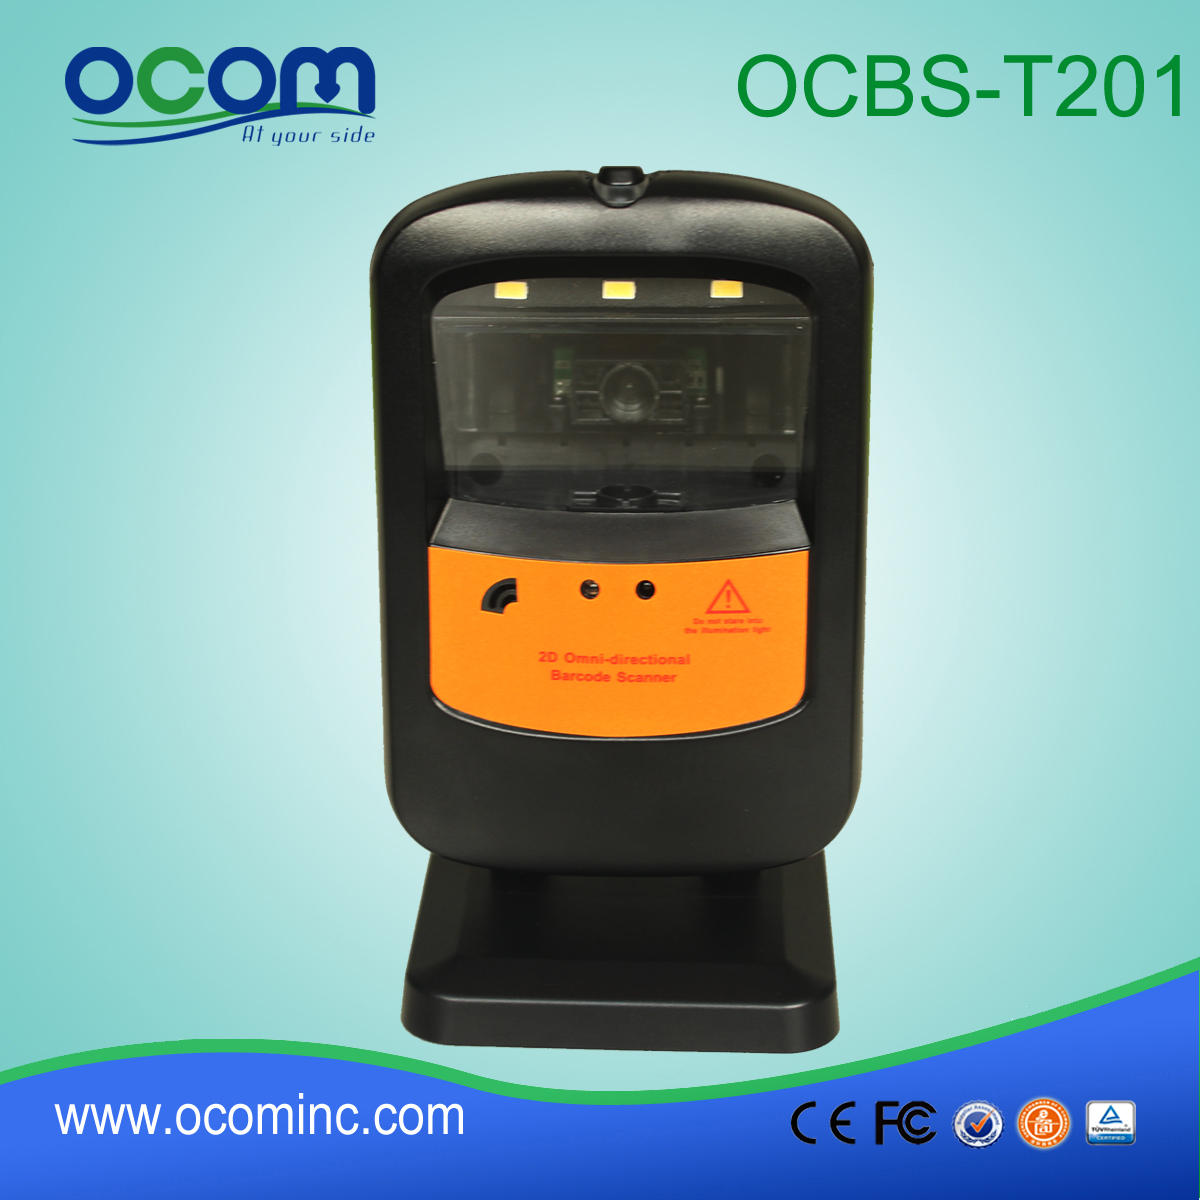 επιτραπέζια barcode scanner / reader (OCBs-T201)